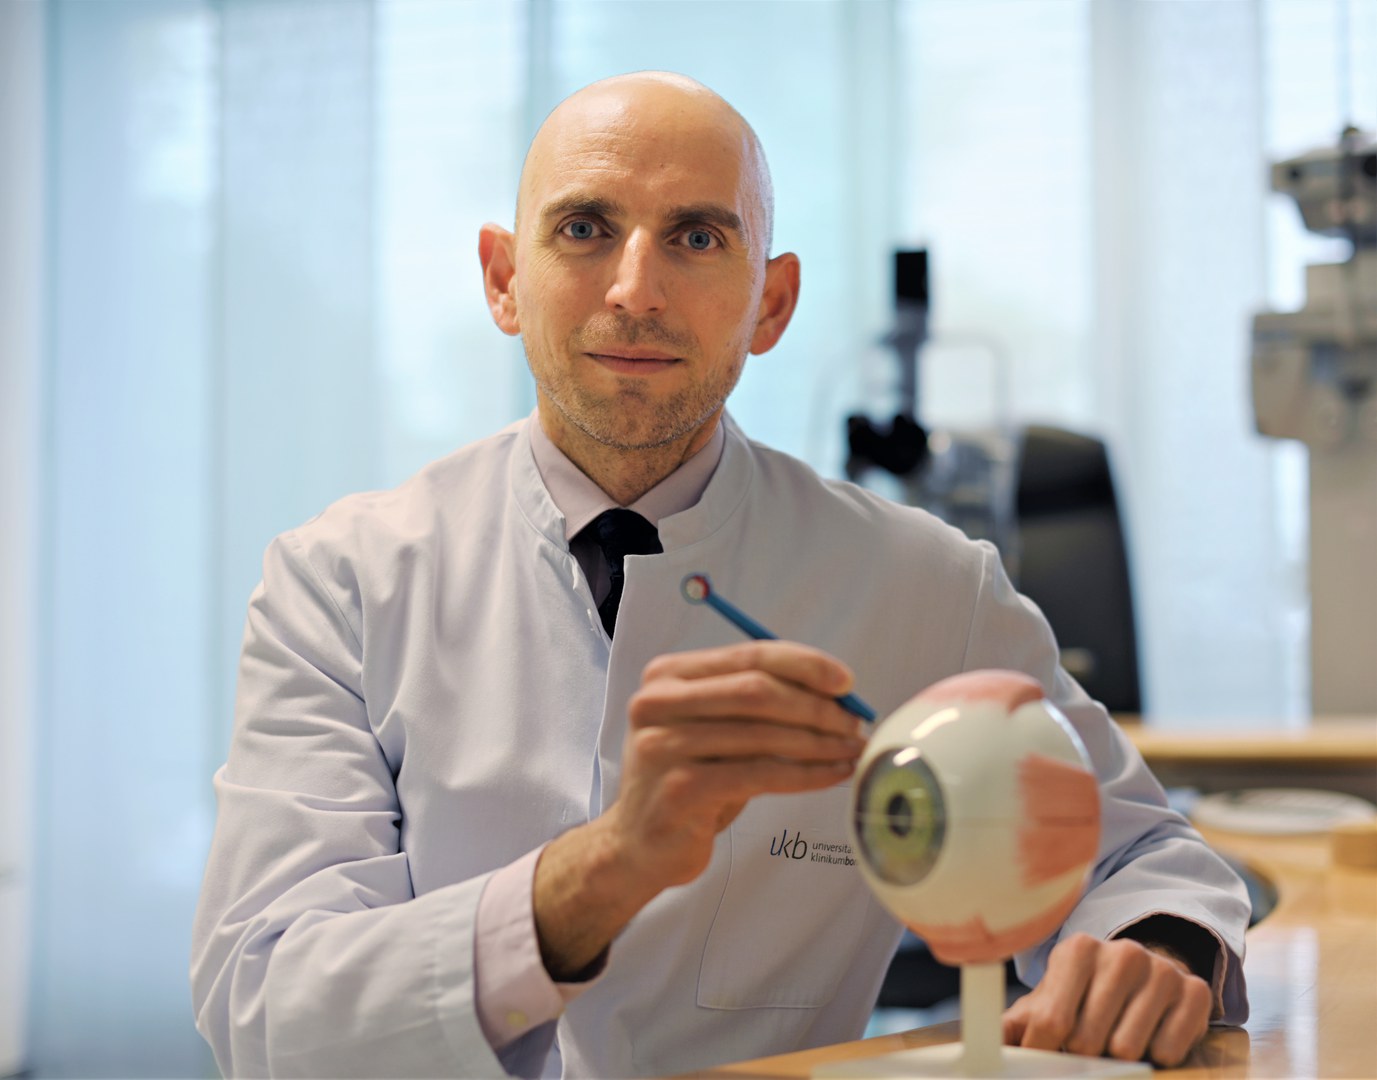 Erstmals PAUL- und EyeWatch-Glaukomimplantate in Bonn eingesetzt: